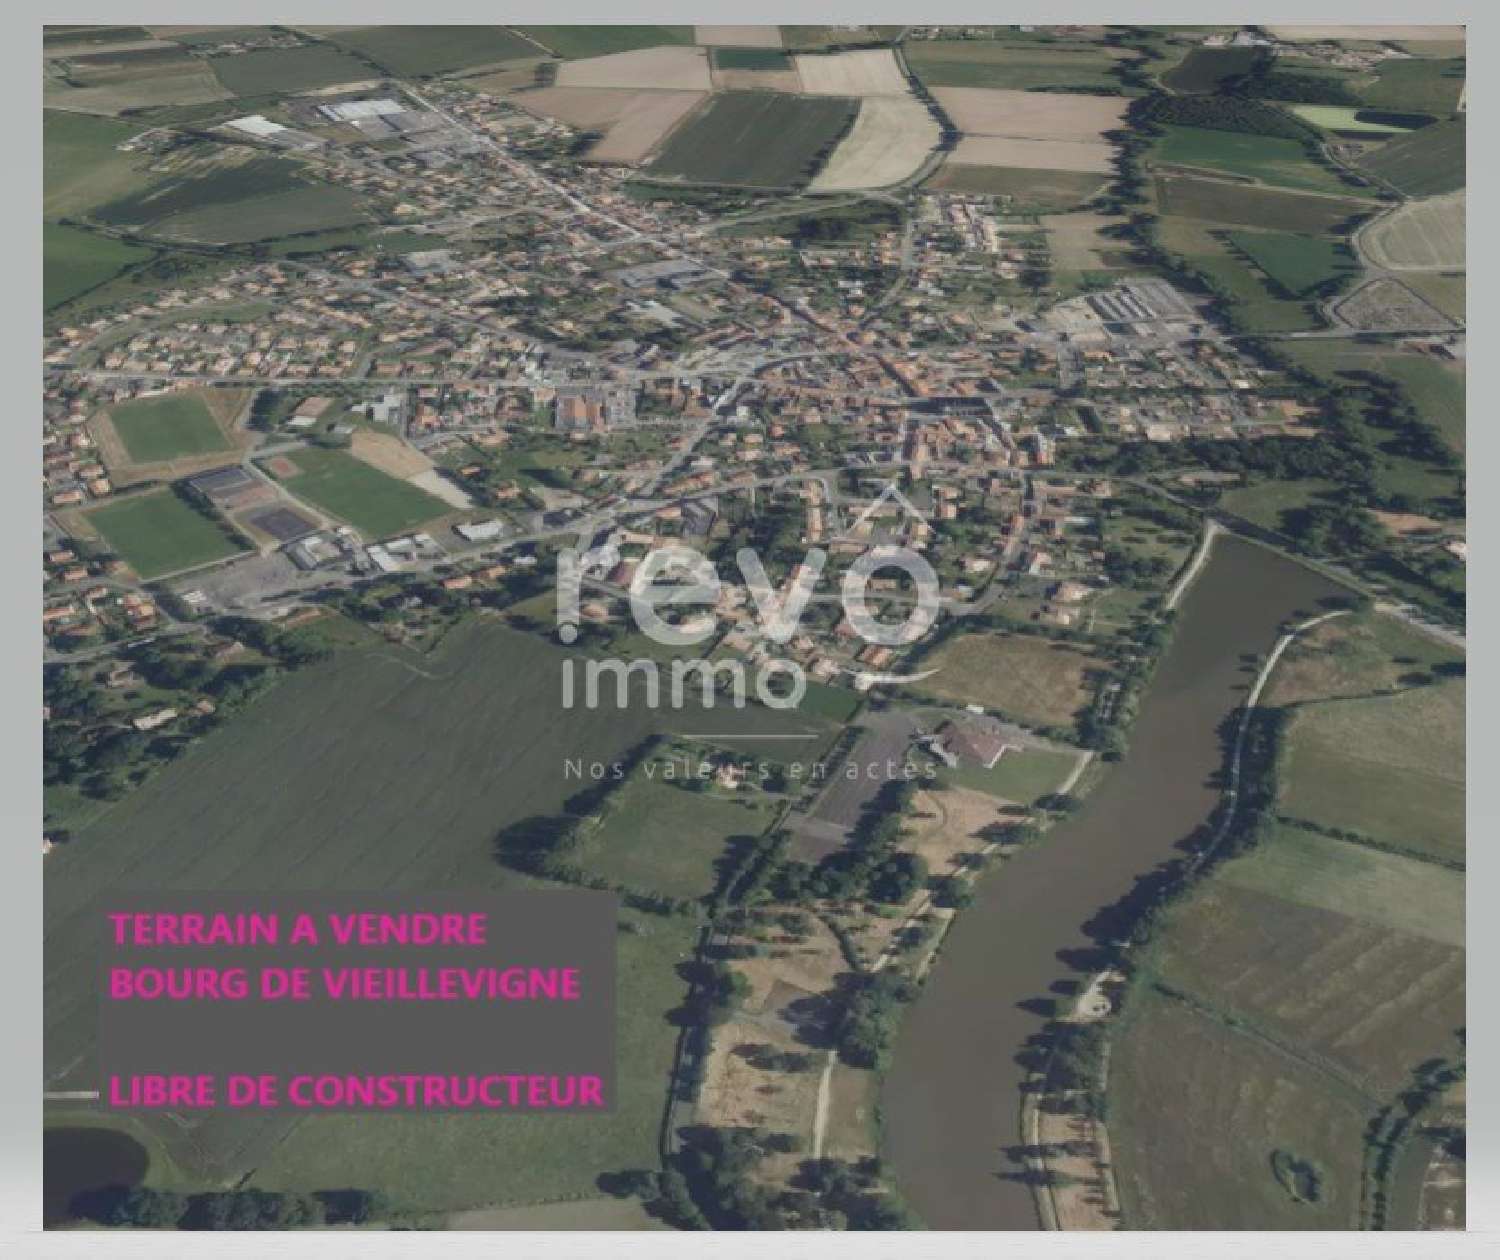  kaufen Grundstück Vieillevigne Loire-Atlantique 1